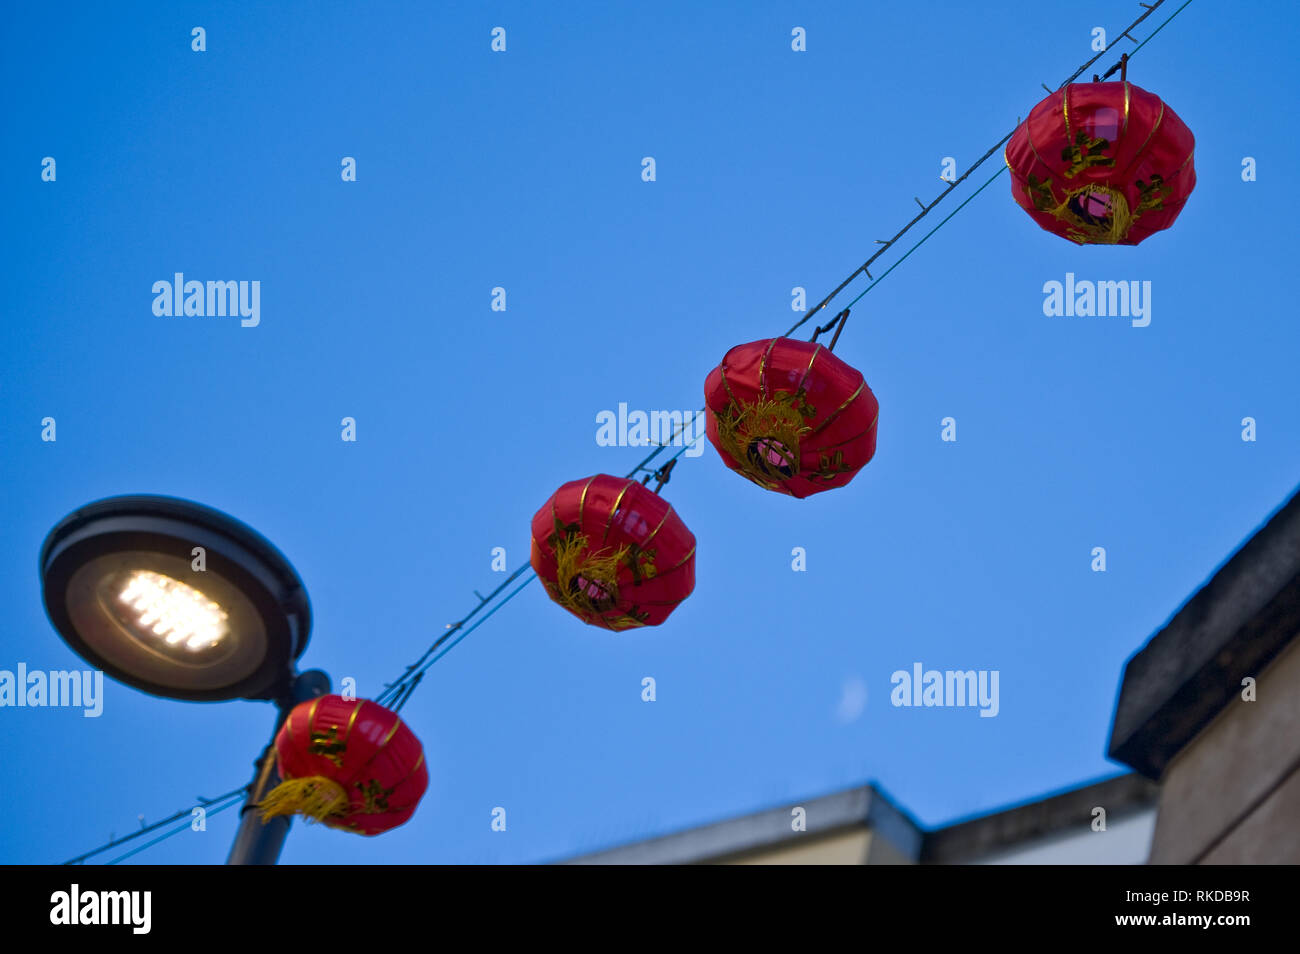 Stock Bild von vier roten Lampions hängen Kabel über einen Laternenpfahl vor blauem Himmel mit Mond leicht sichtbar unten rechts. Stockfoto